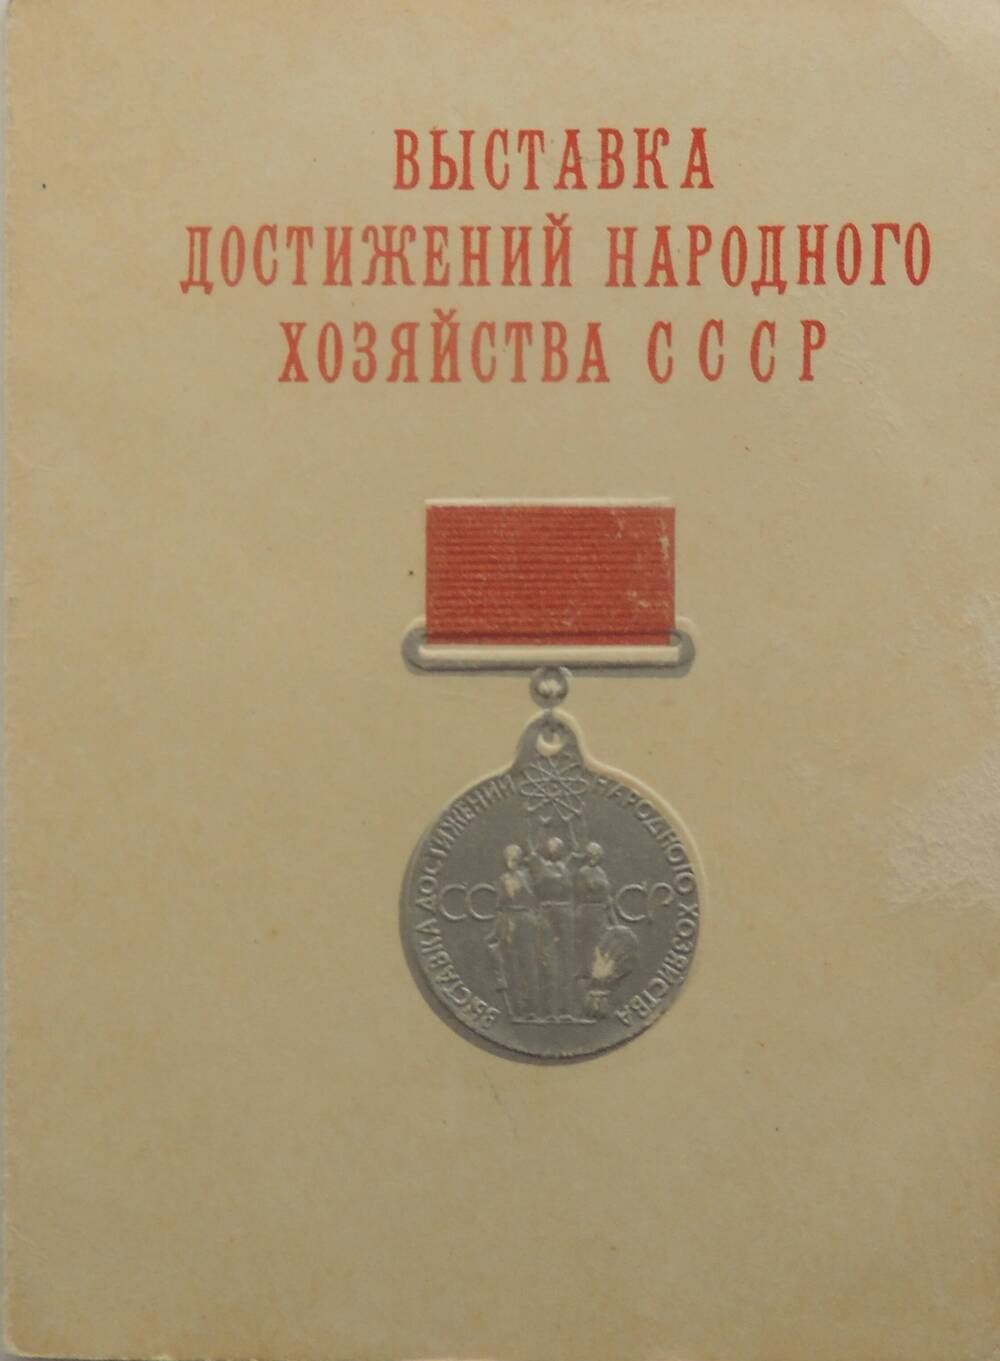 Удостоверение  на имя Бреус В.Л. о награждении серебряной медалью ВДНХ СССР за 1969 г.